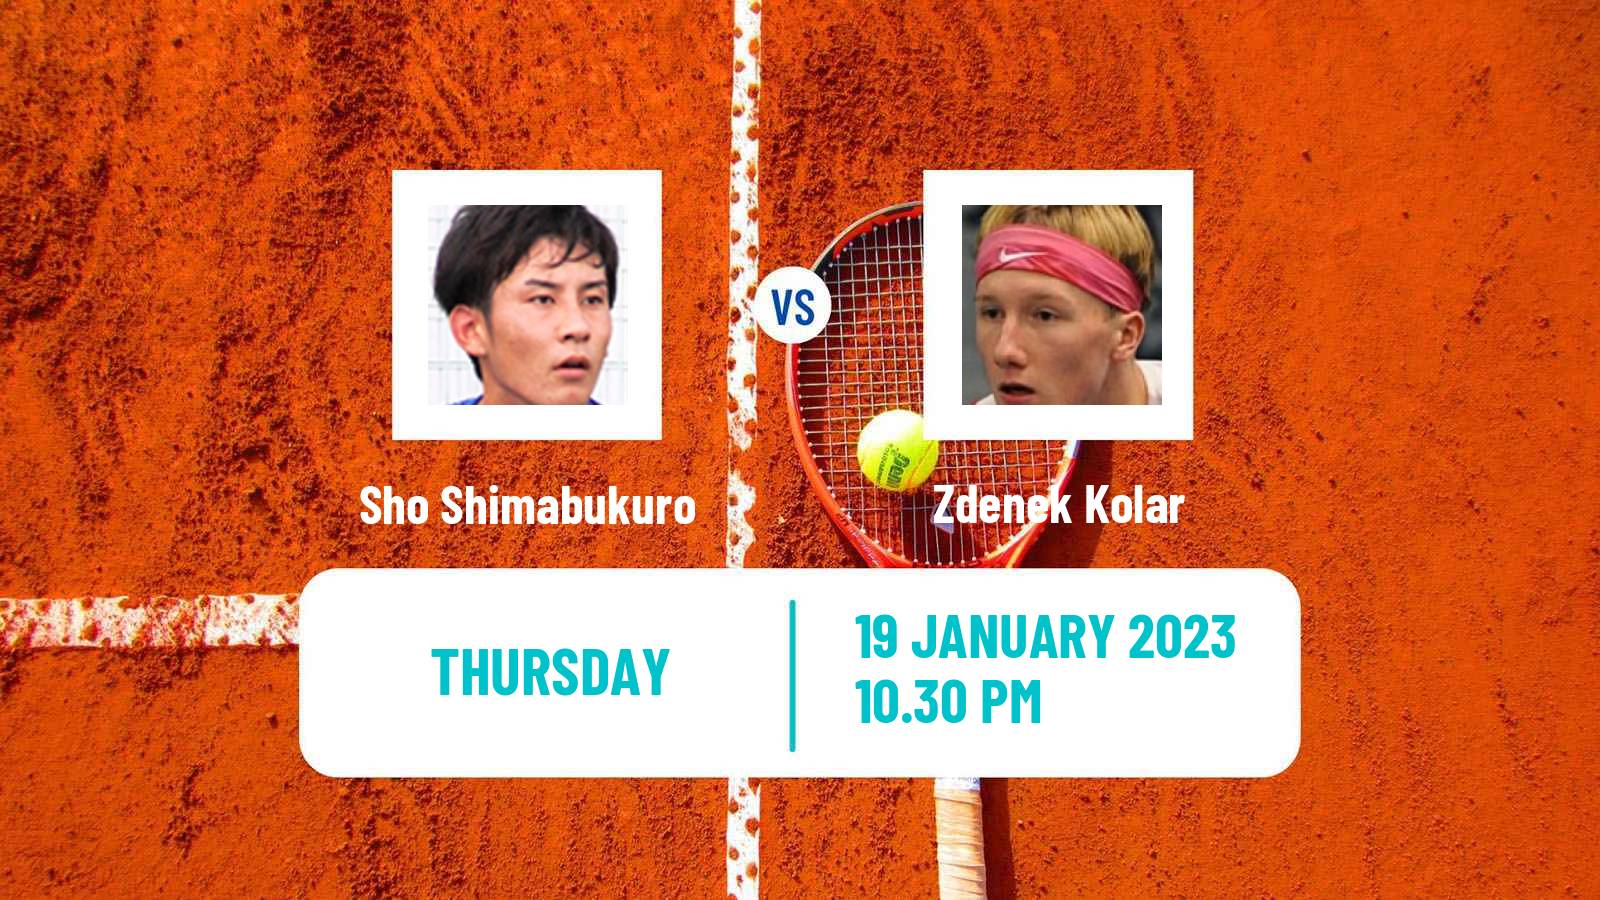 Tennis ATP Challenger Sho Shimabukuro - Zdenek Kolar